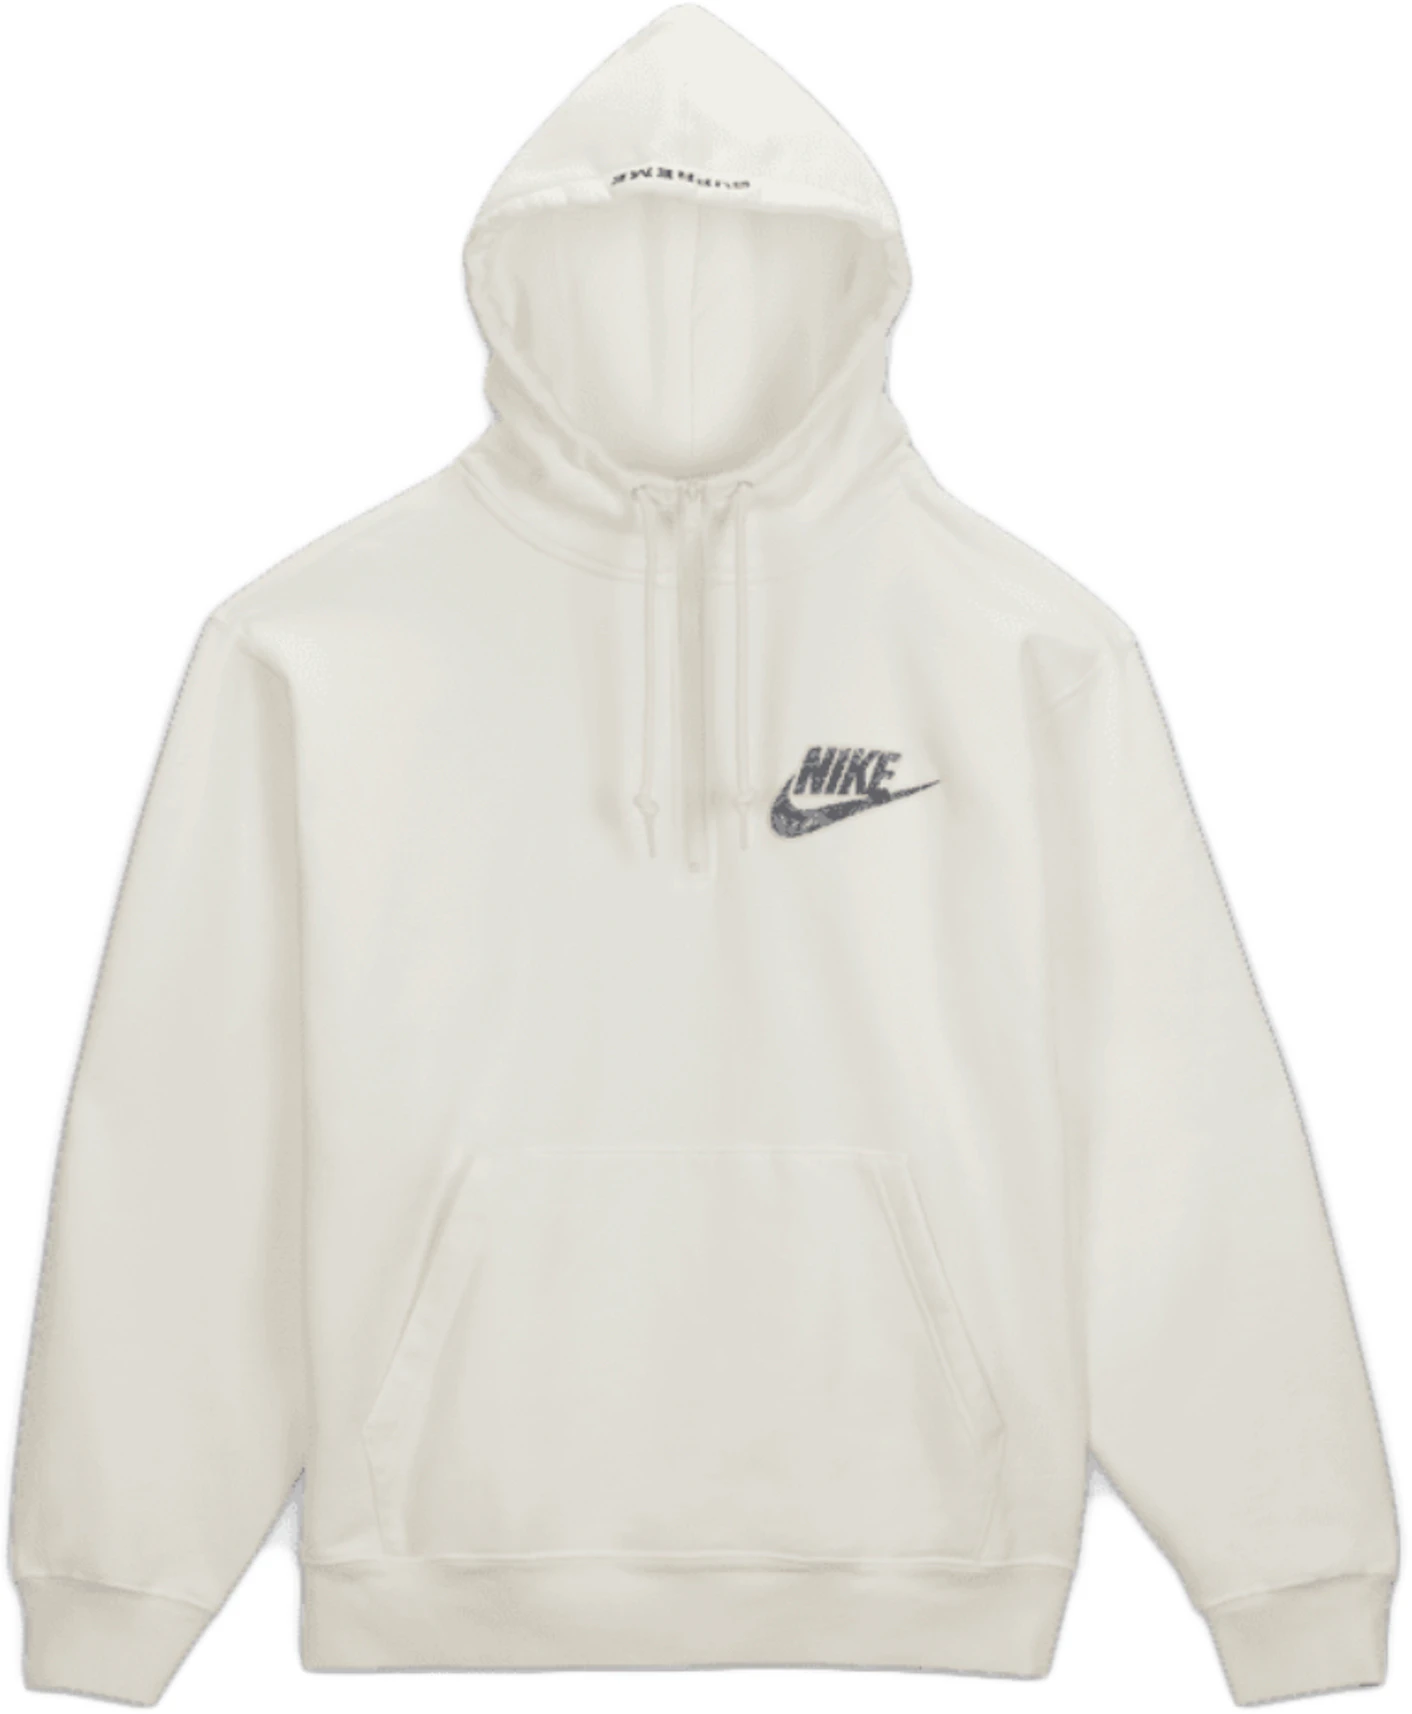 Supreme Nike Zip Hooded Sweatshirt - SS21 - ES